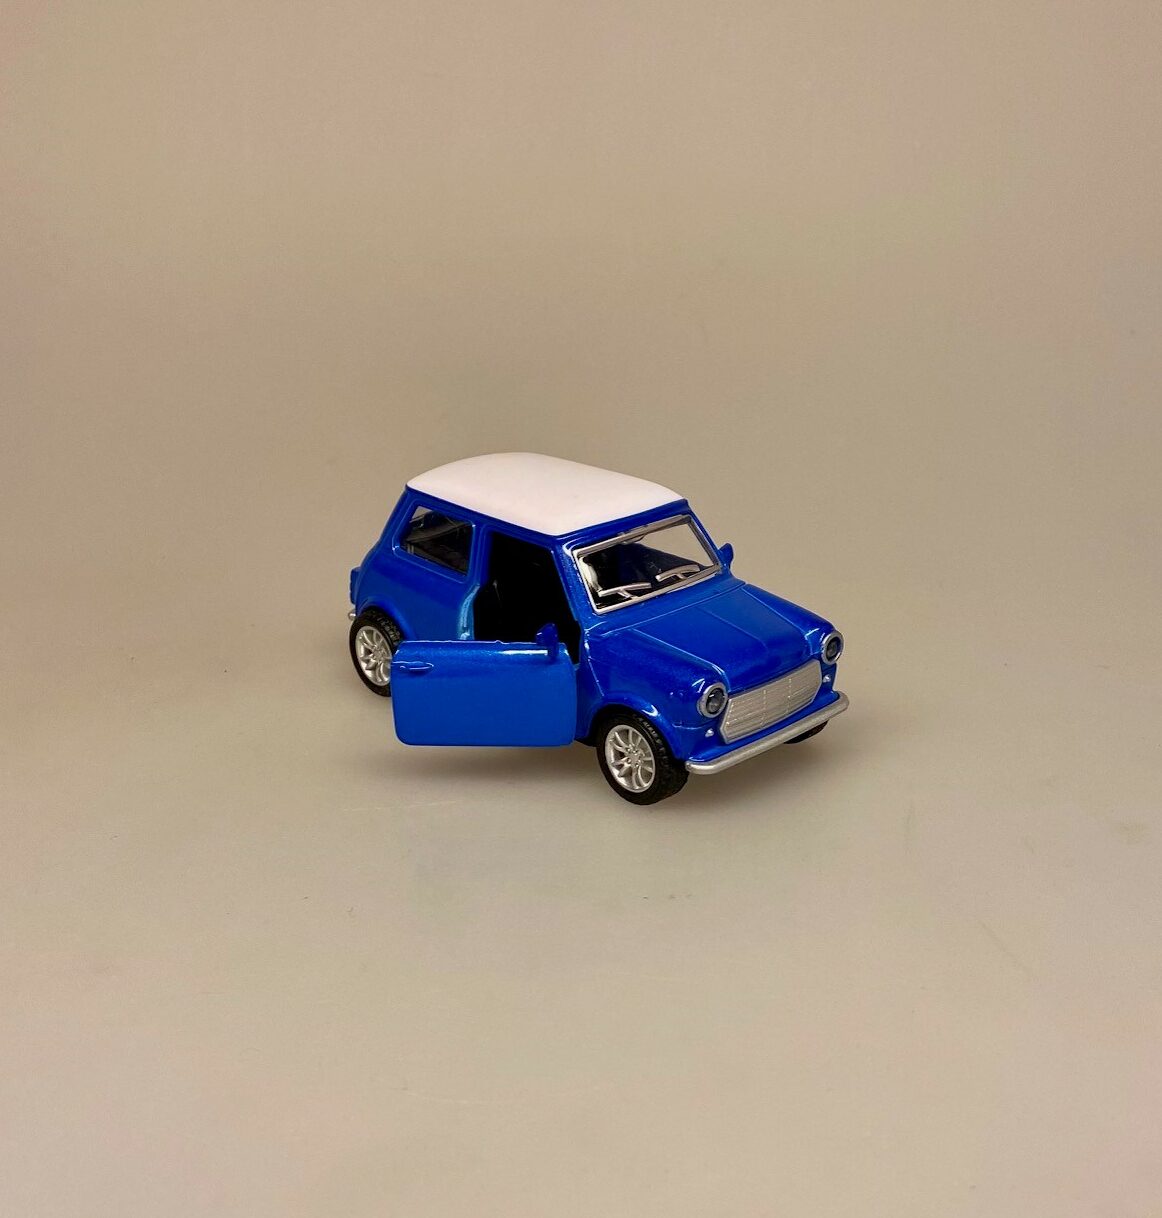 Mini Cooper - Morris Minor Stor - Blå, blå, metallic, maskot, modelbil, metal, kvalitet, legetøjsbil, legetøj, bil, ny, original, kopi, ægte, kvalitet, flot, symbolsk, gave, gaveide, kørekort, tilllykke, sangskjuler, biti, ribe